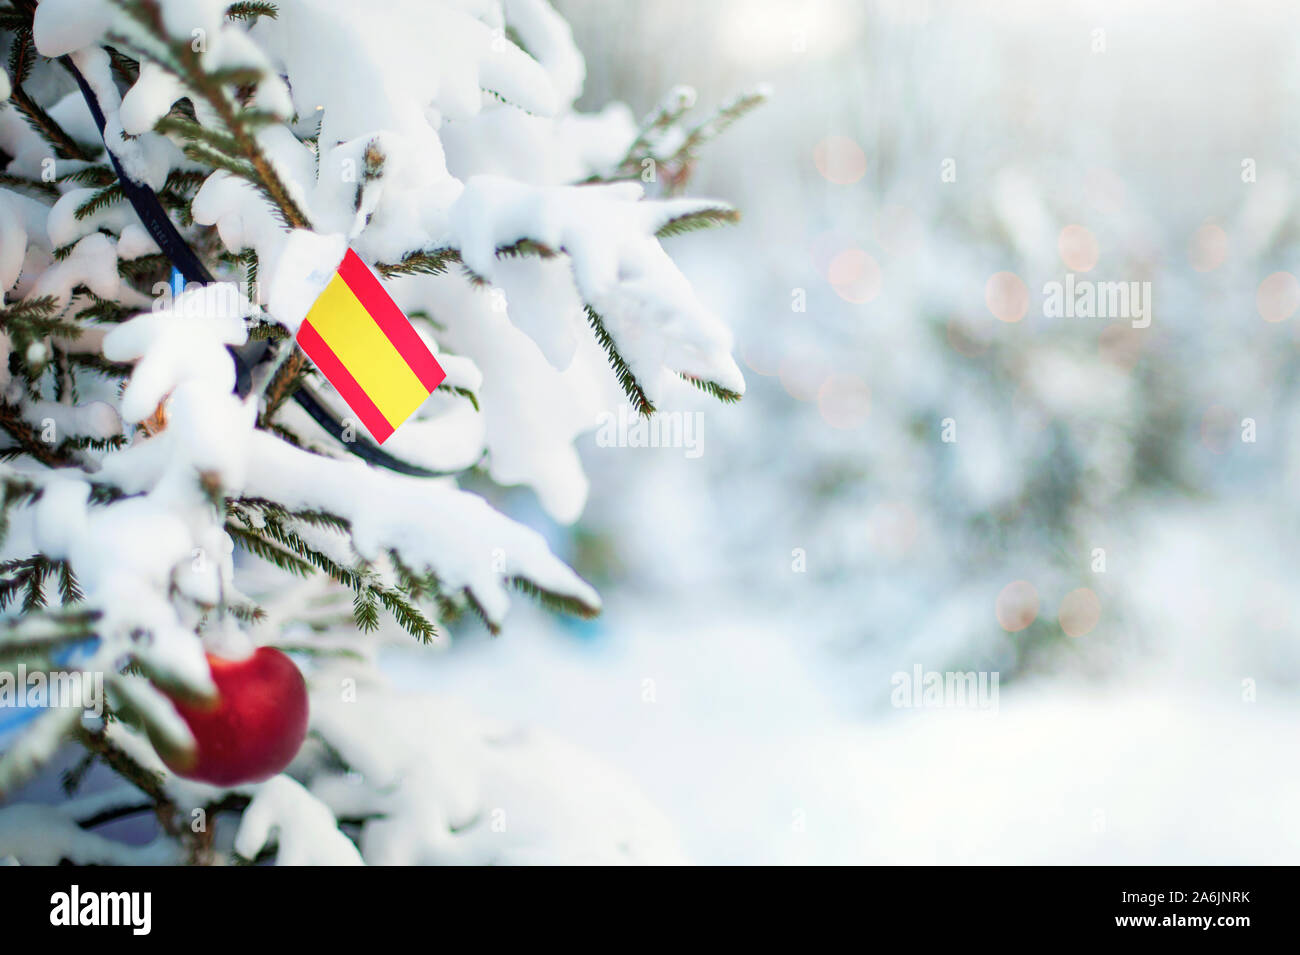 Weihnachten in Spanien. Xmas Tree mit Schnee, Dekorationen und eine Flagge bedeckt. Verschneite Wald Hintergrund im Winter. Weihnachten Grußkarte. Stockfoto